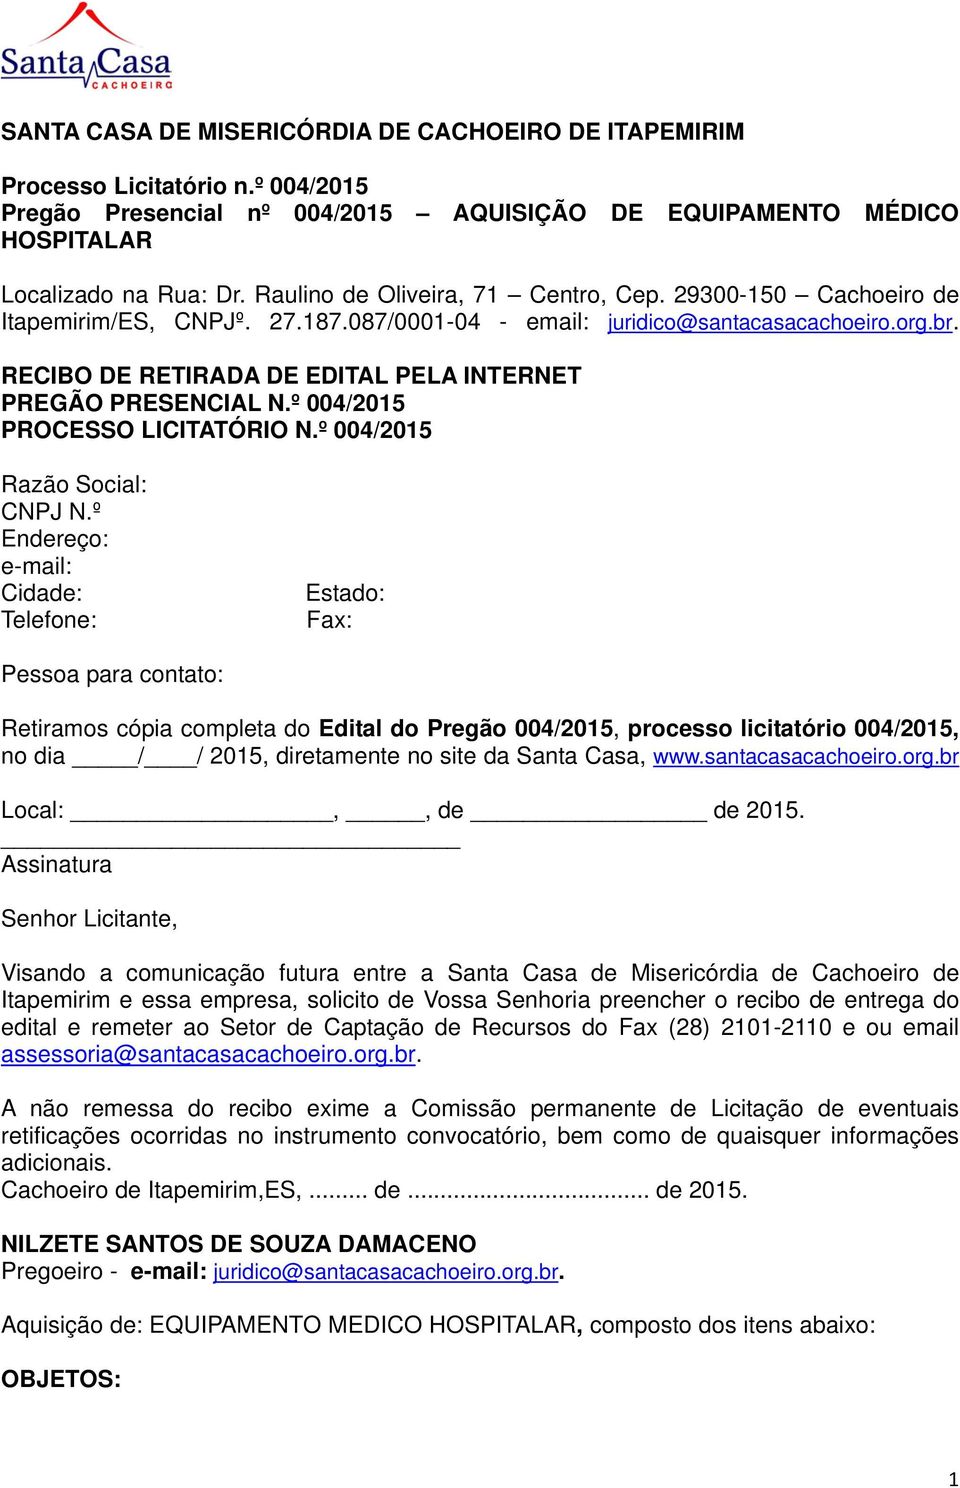 RECIBO DE RETIRADA DE EDITAL PELA INTERNET PREGÃO PRESENCIAL N.º 004/2015 PROCESSO LICITATÓRIO N.º 004/2015 Razão Social: CNPJ N.